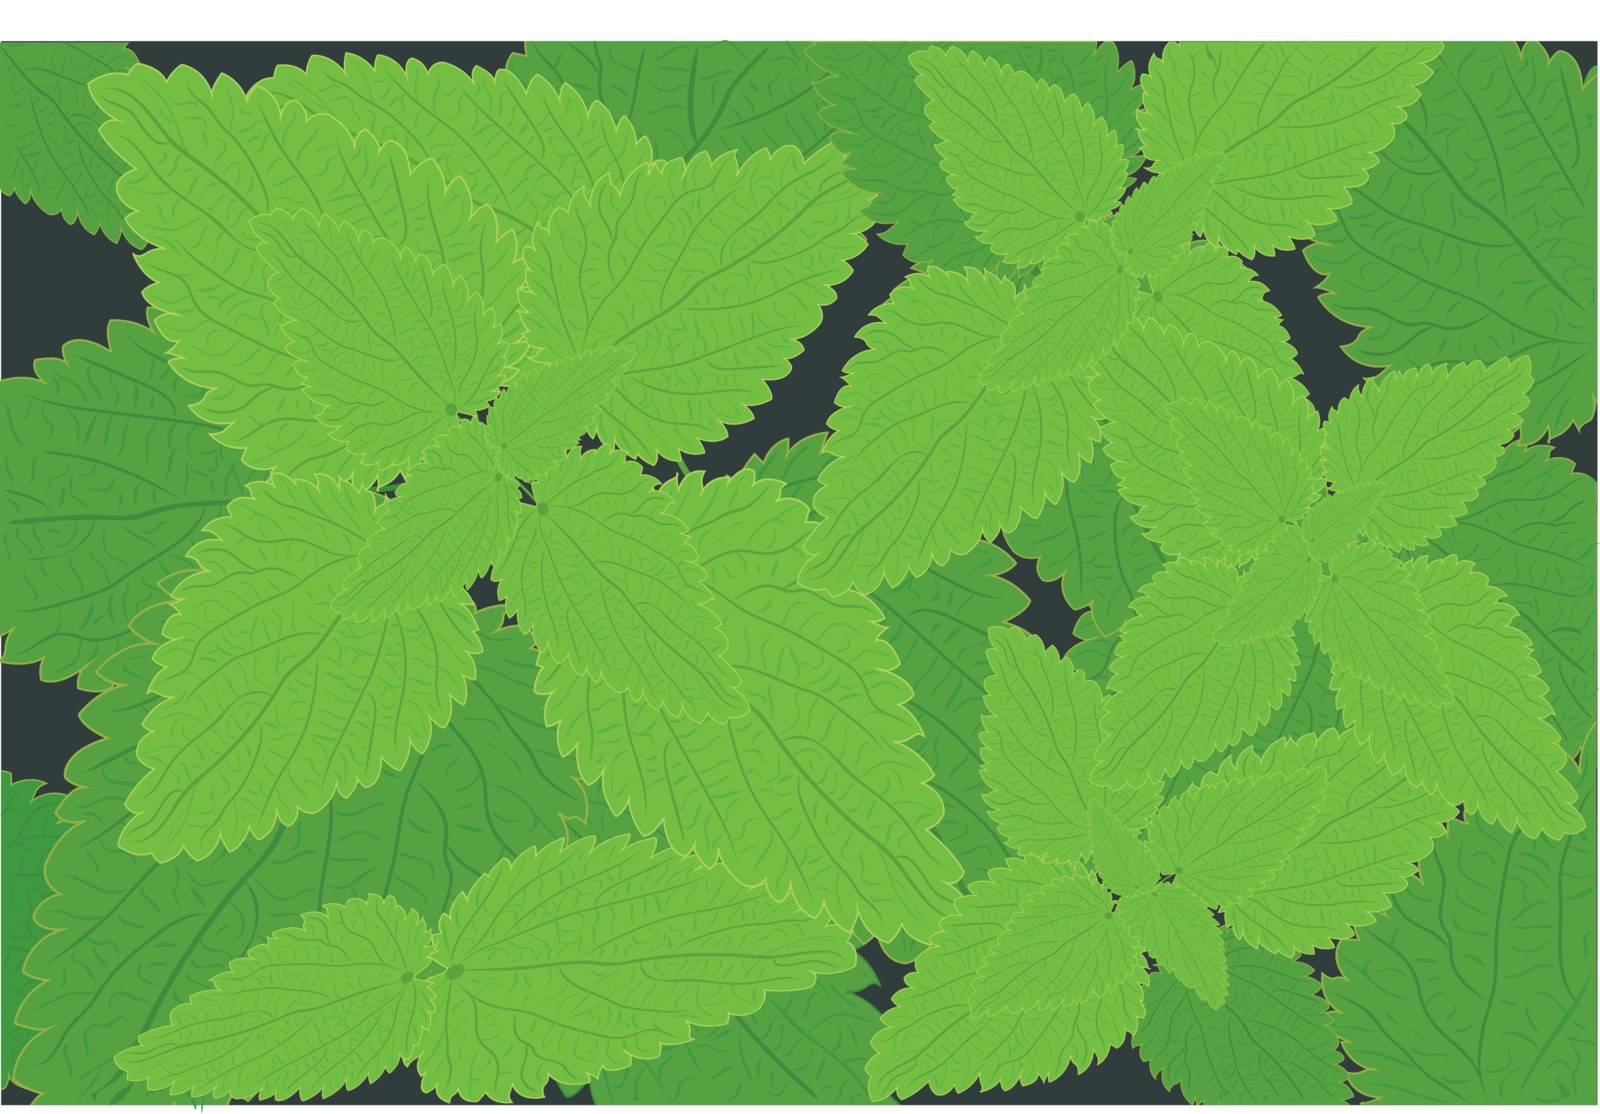 Stinging nettle background Herbal medicine  vector illustration Medical background